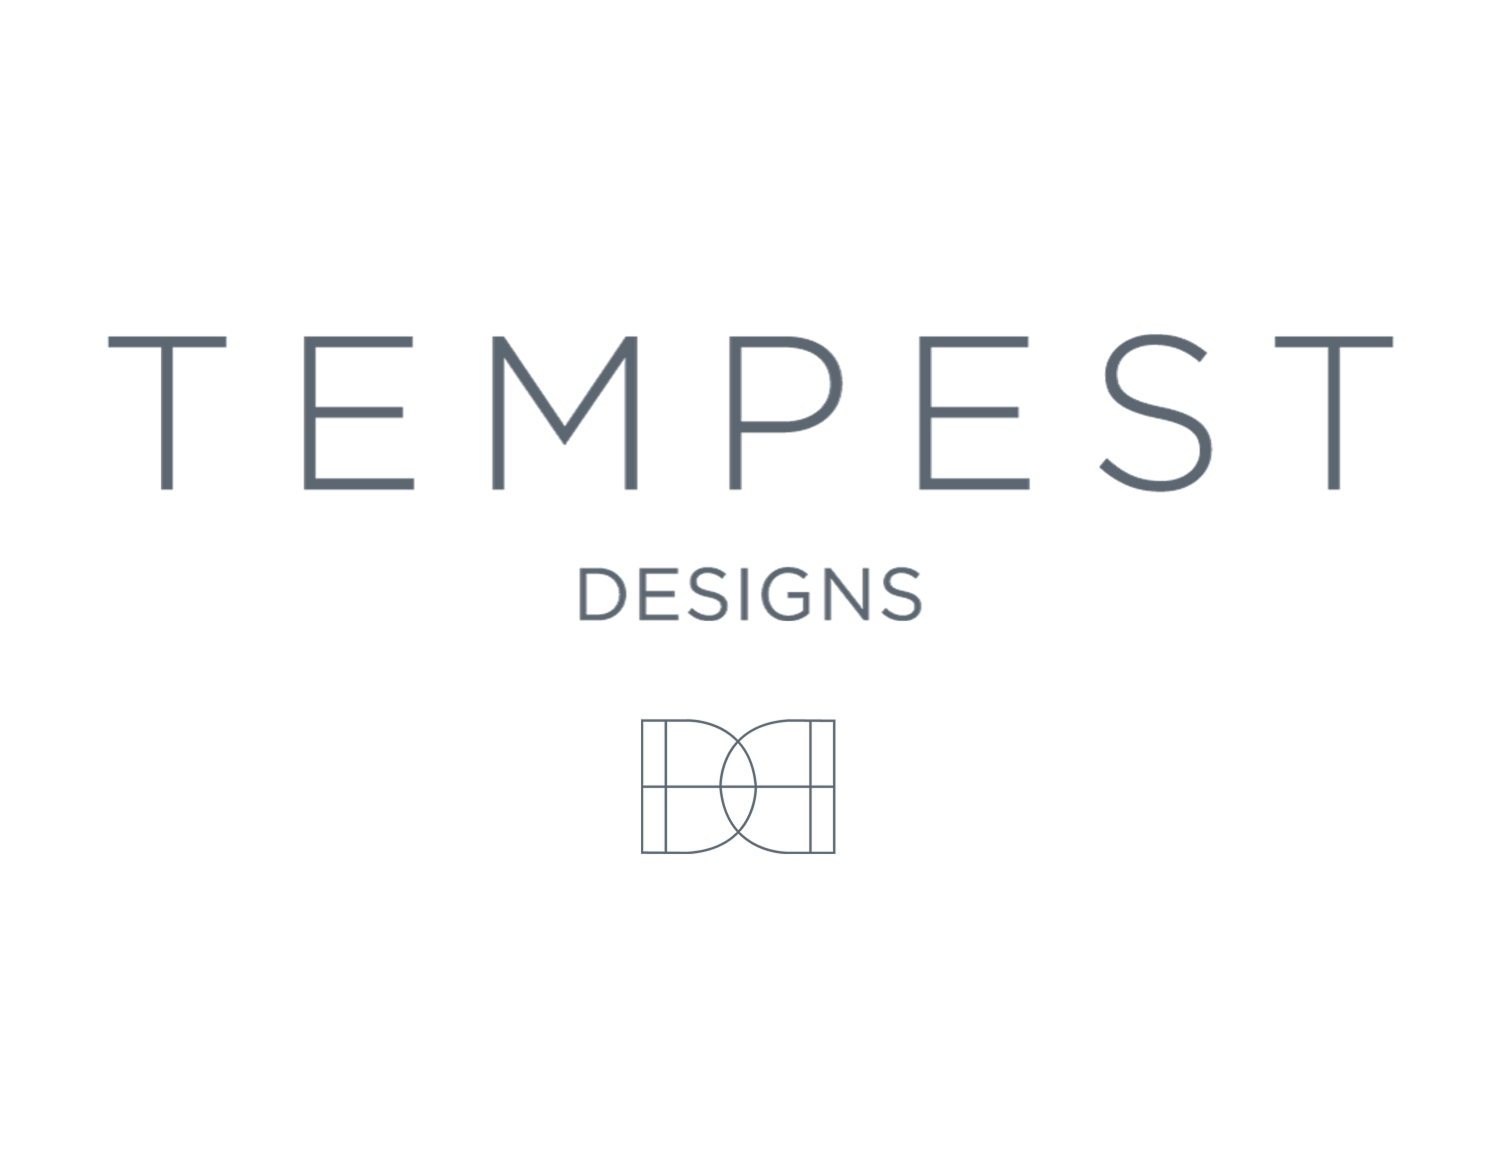 Tempest Designs